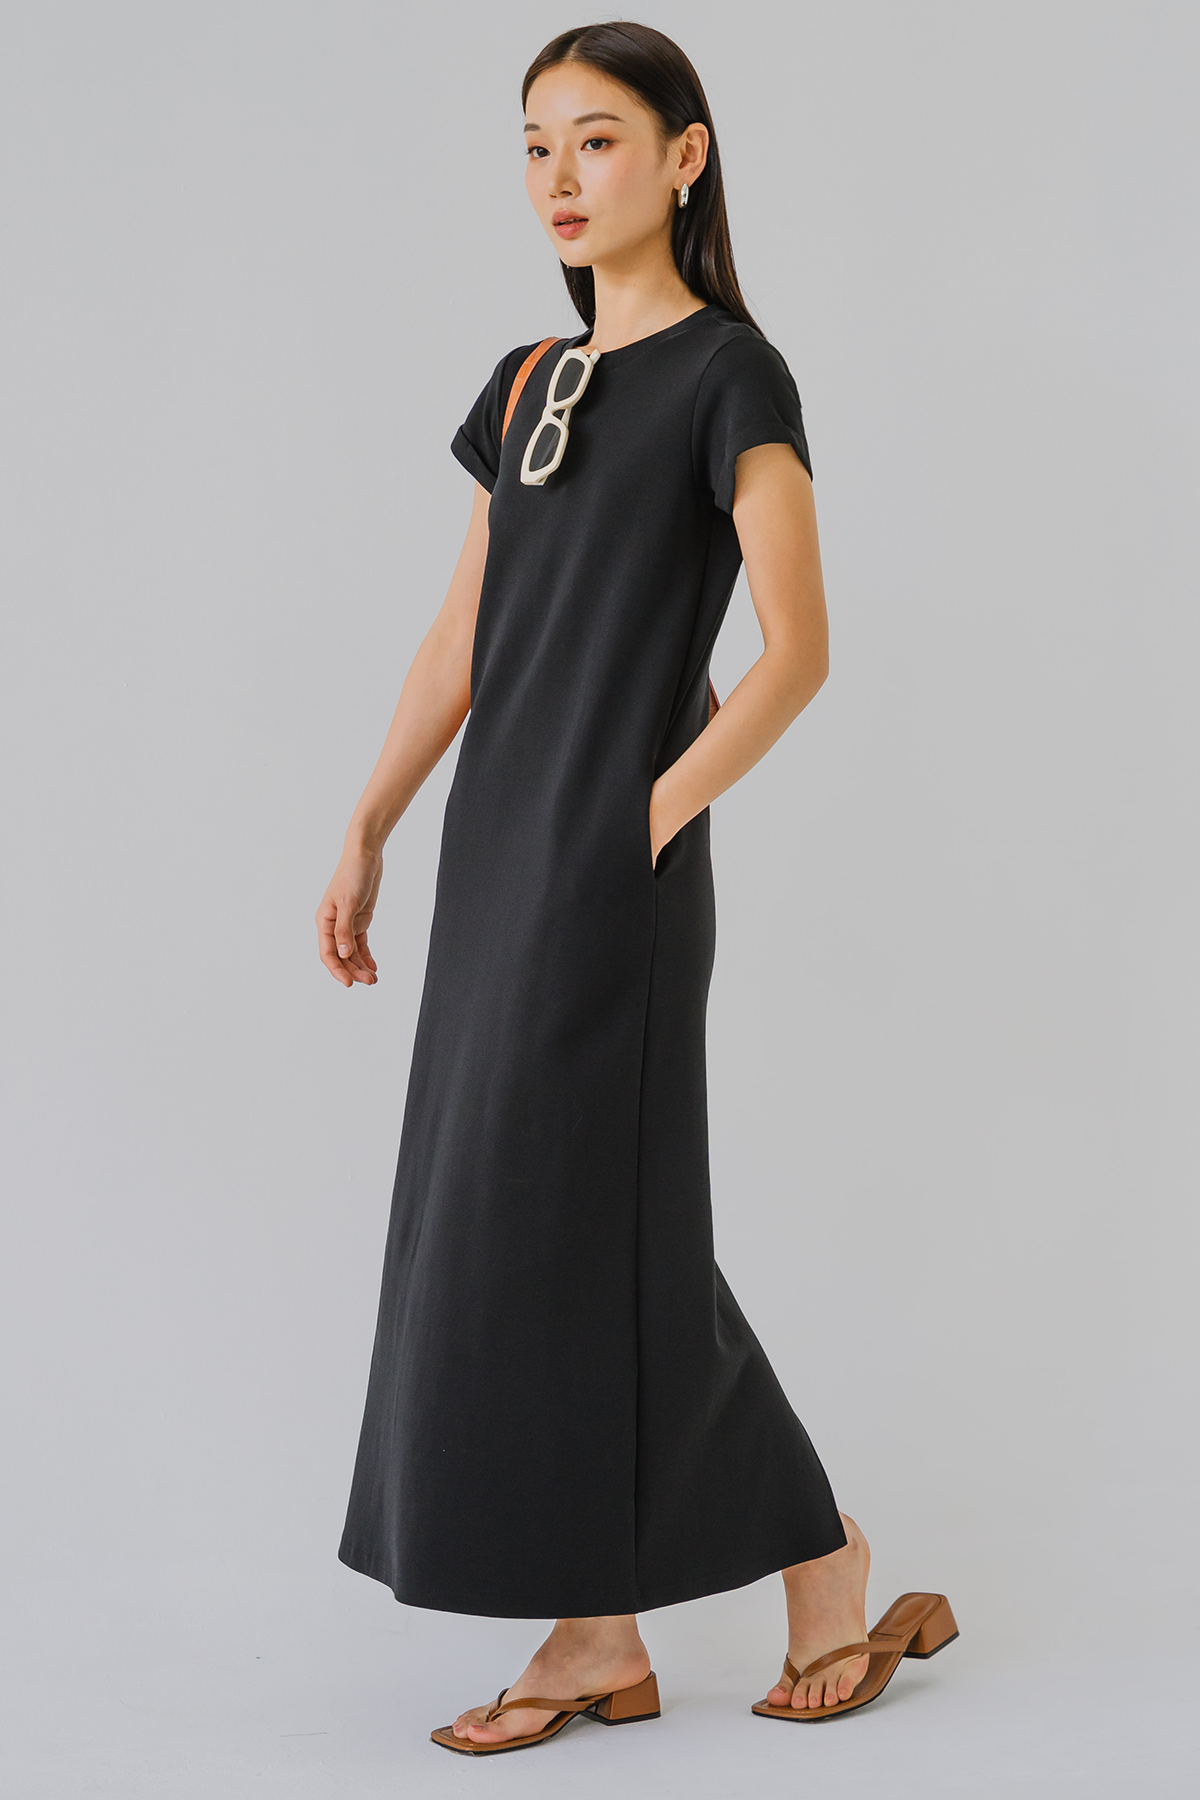 Backorder* For Keeps Round Neck Midaxi Dress (Black)